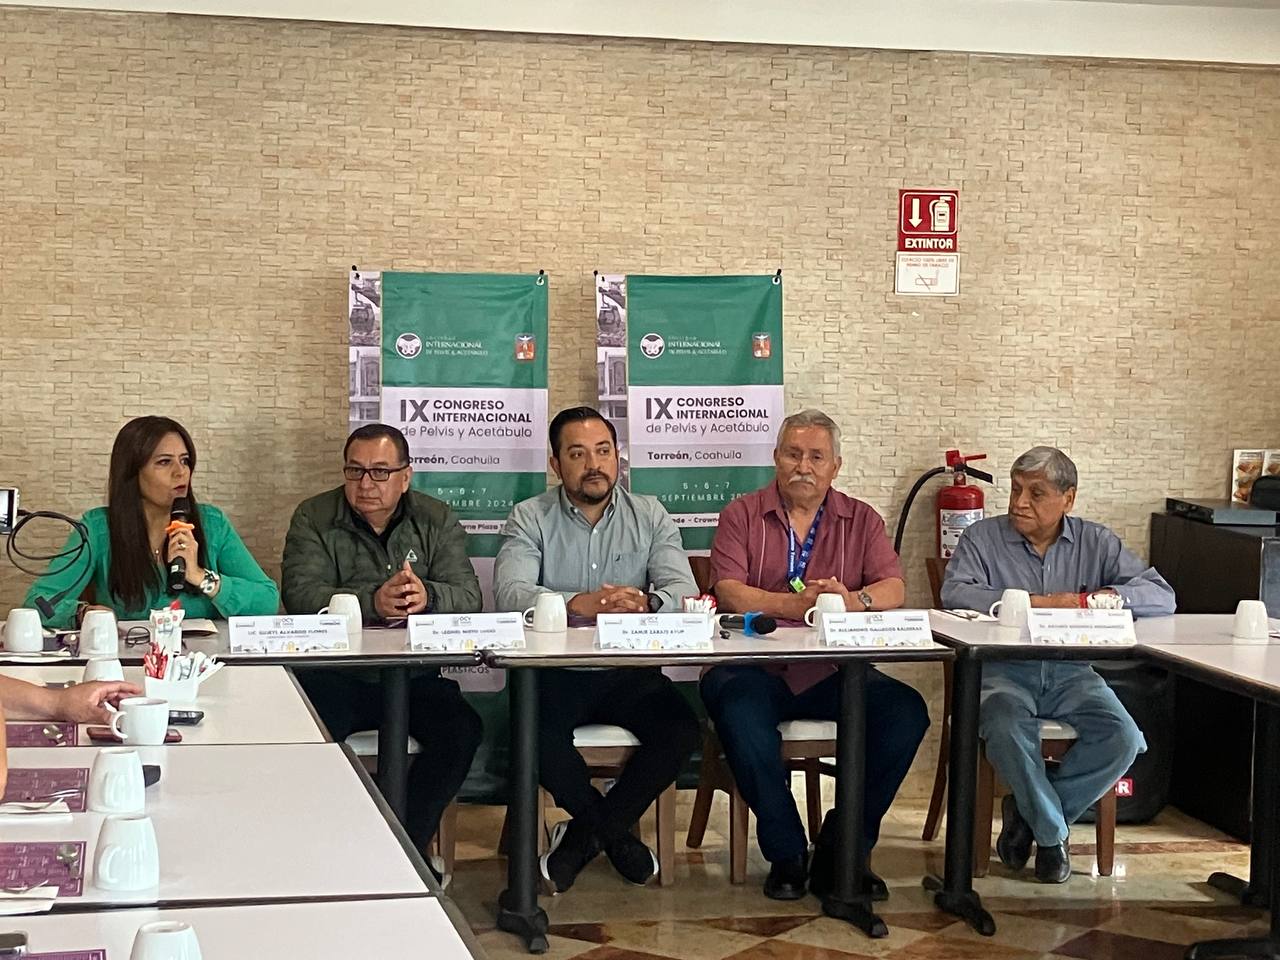 Torreón será sede del IX Congreso Internacional de Pelvis y Acetábulo